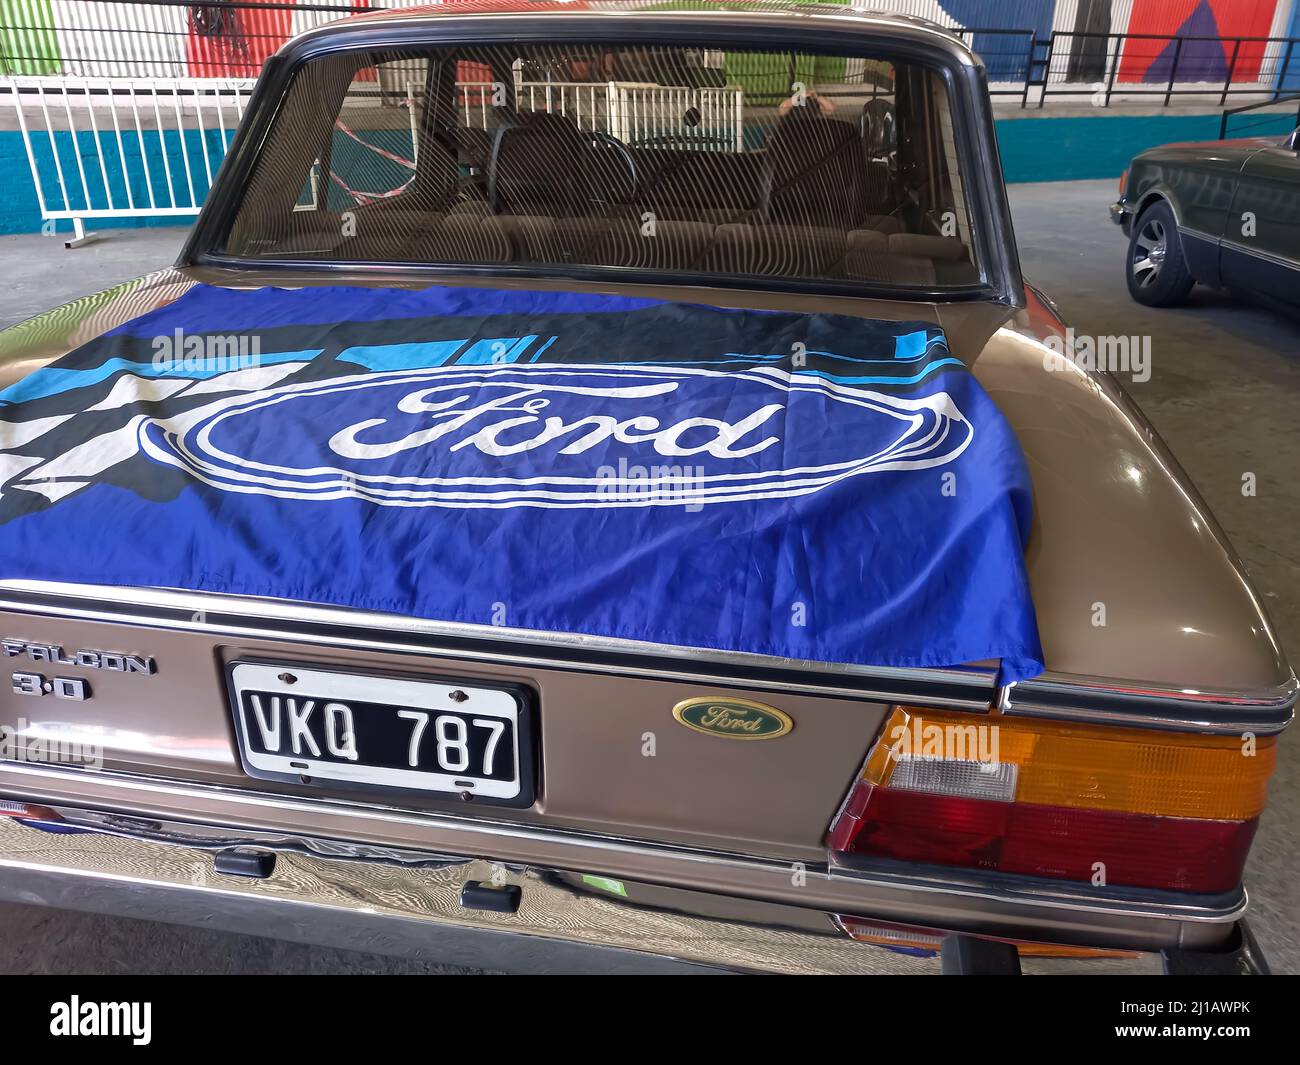 Drapeau bleu avec logo ovale Ford et marquage sur le couvercle de coffre d'une vieille voiture classique Falcon 3,0 vers 1980. Vue arrière. Lettres blanches sur fond bleu. Banque D'Images